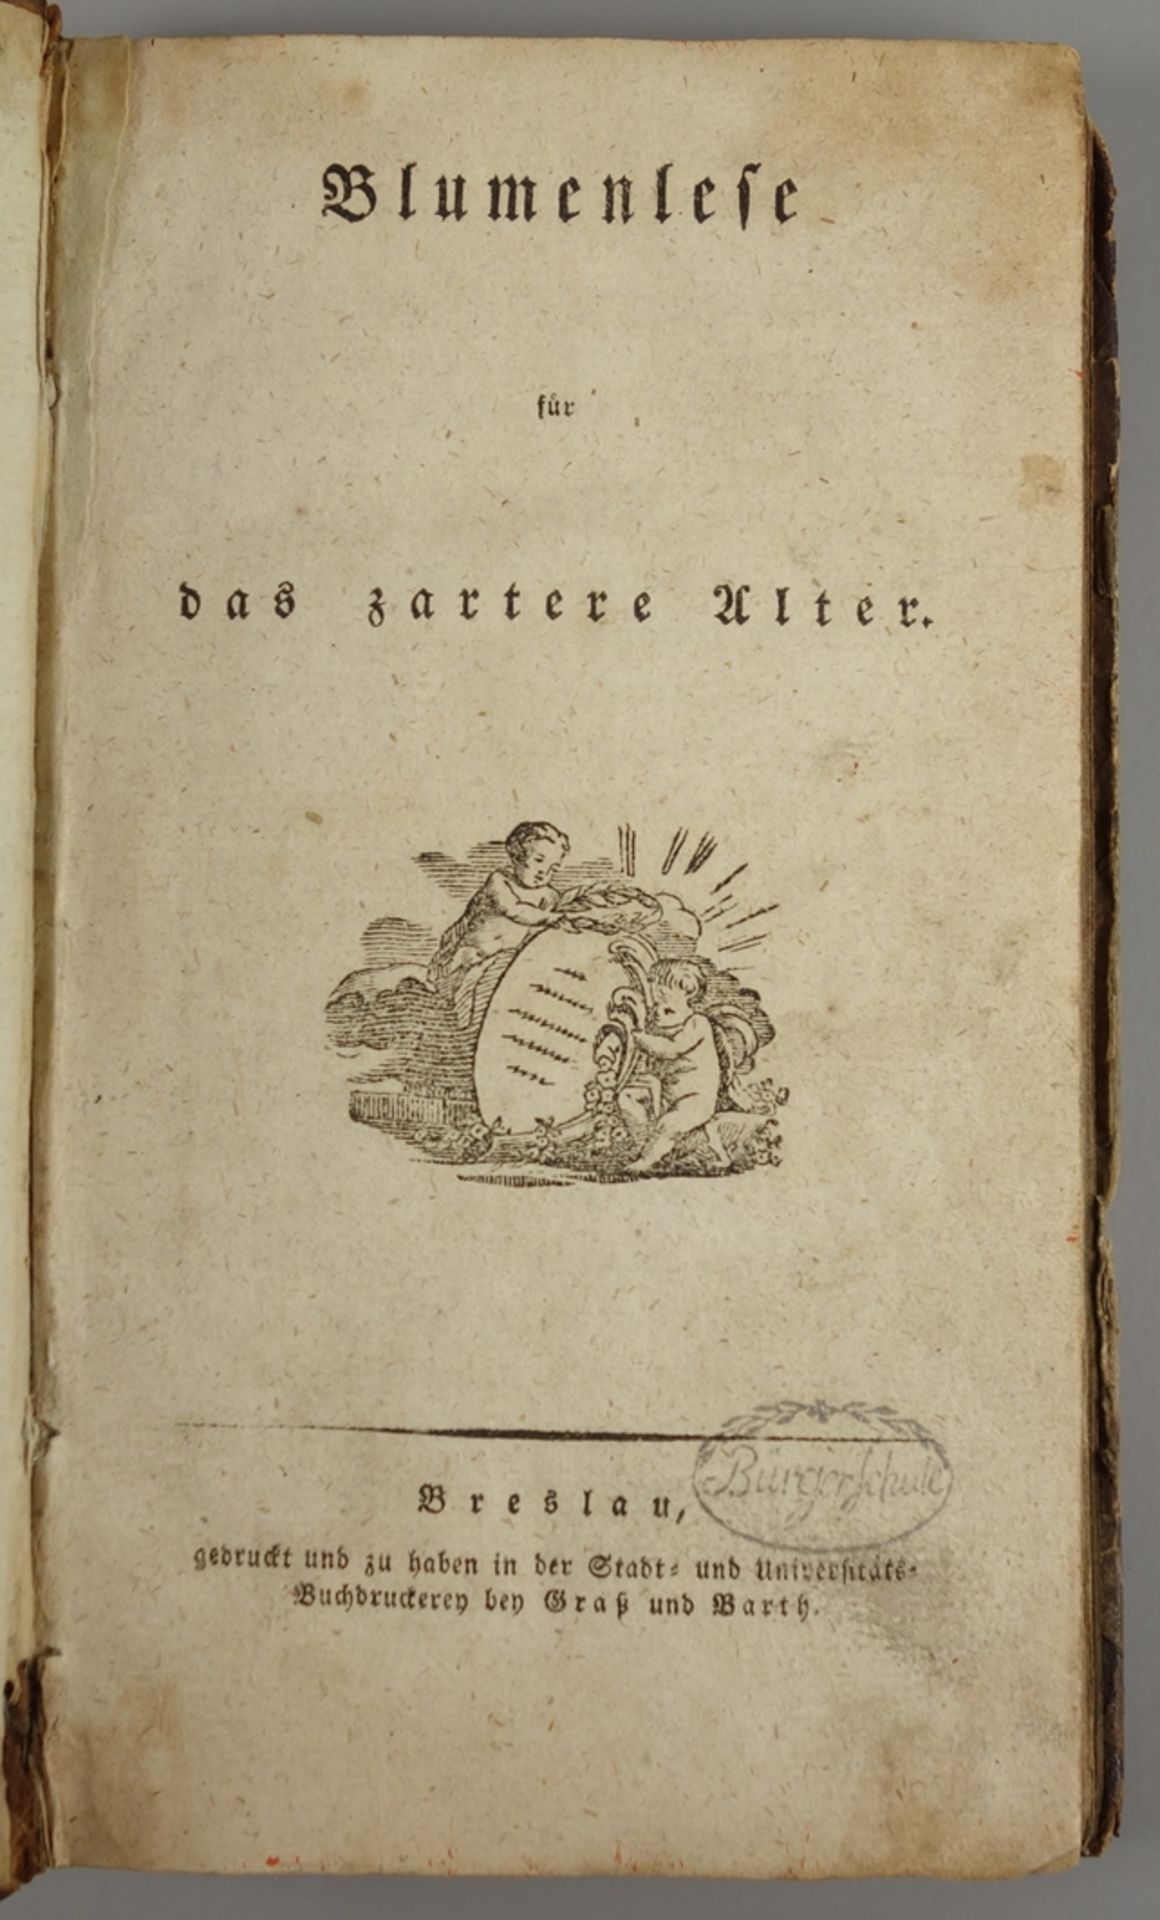 Blumenlese für das zartere Alter, Johann Wilhelm Oelsner, Breslau, 1814